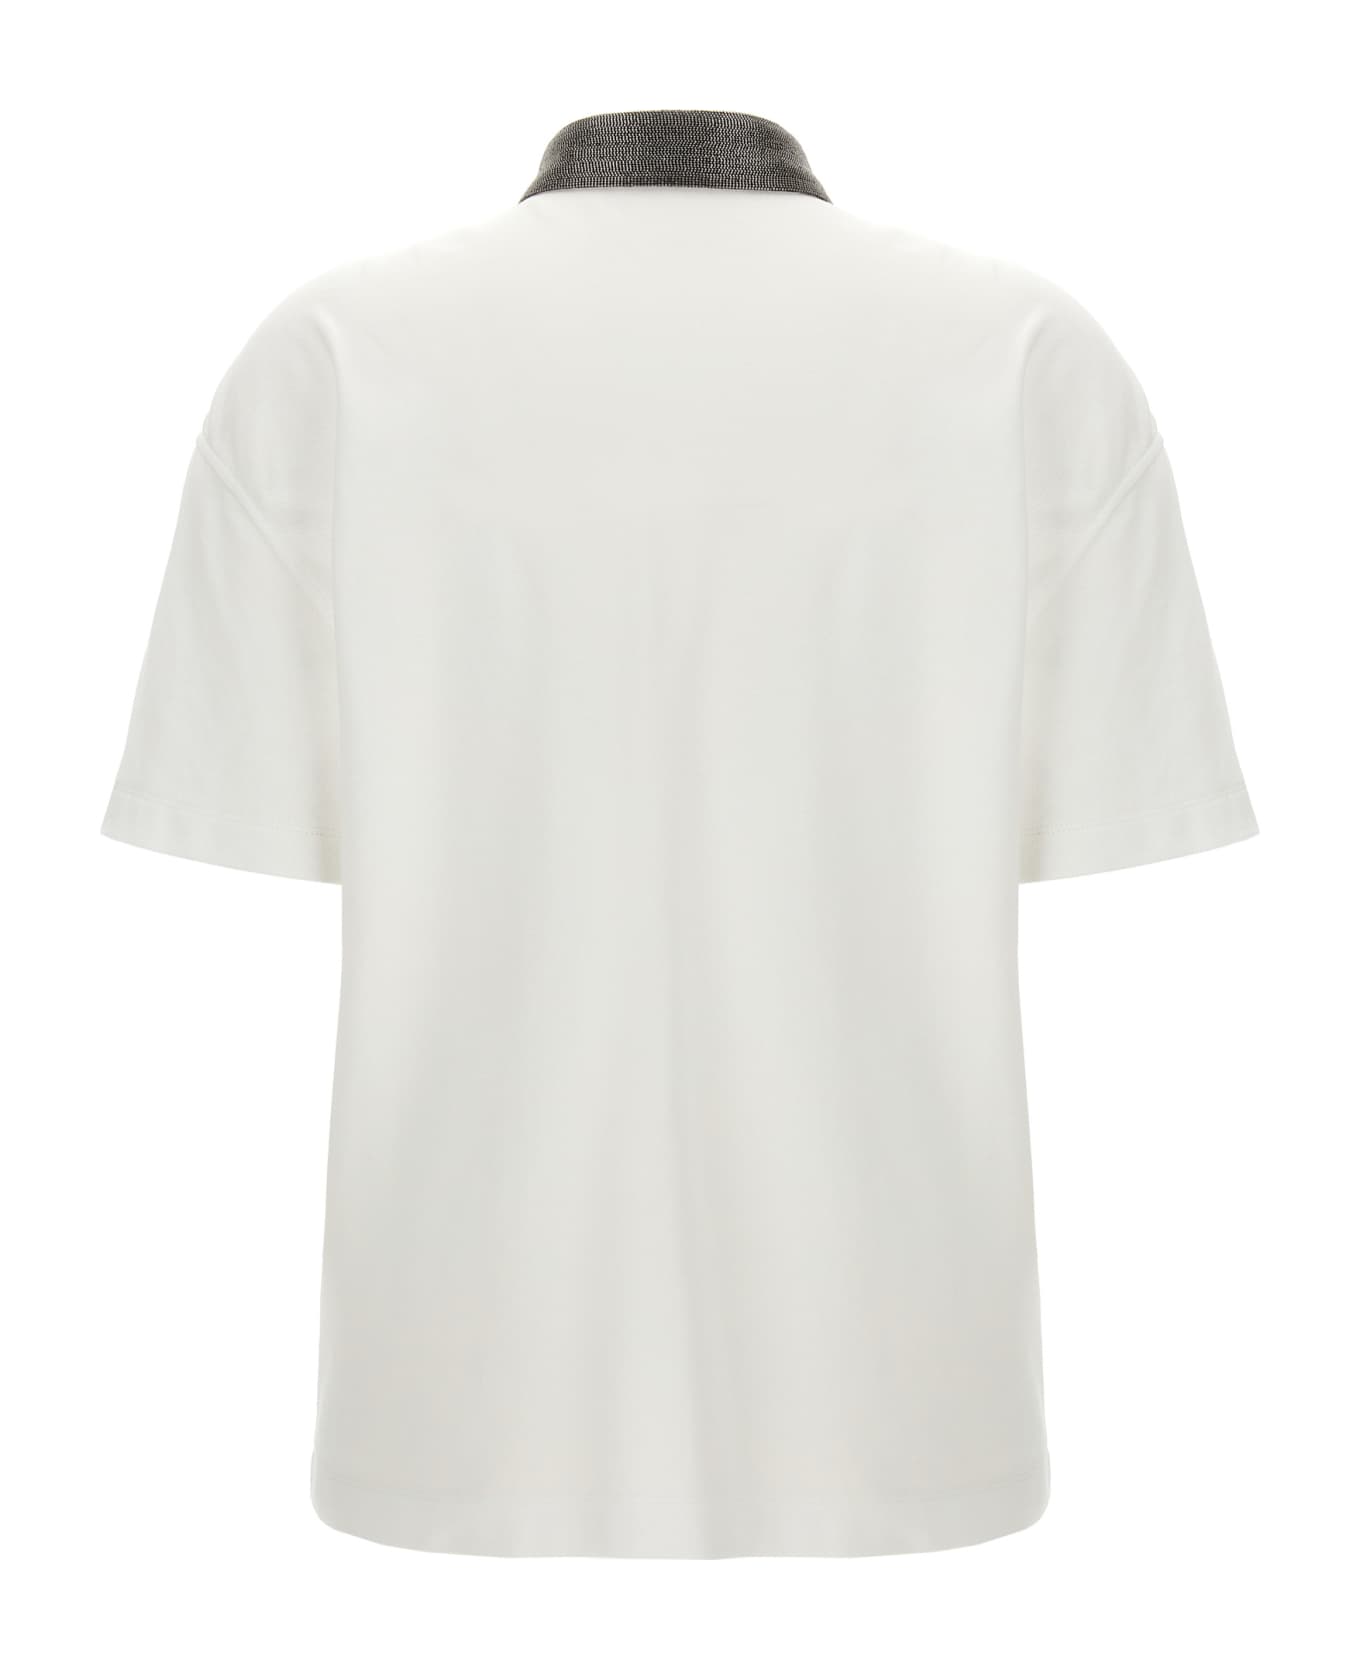 Brunello Cucinelli 'monile' Polo Shirt - White ポロシャツ